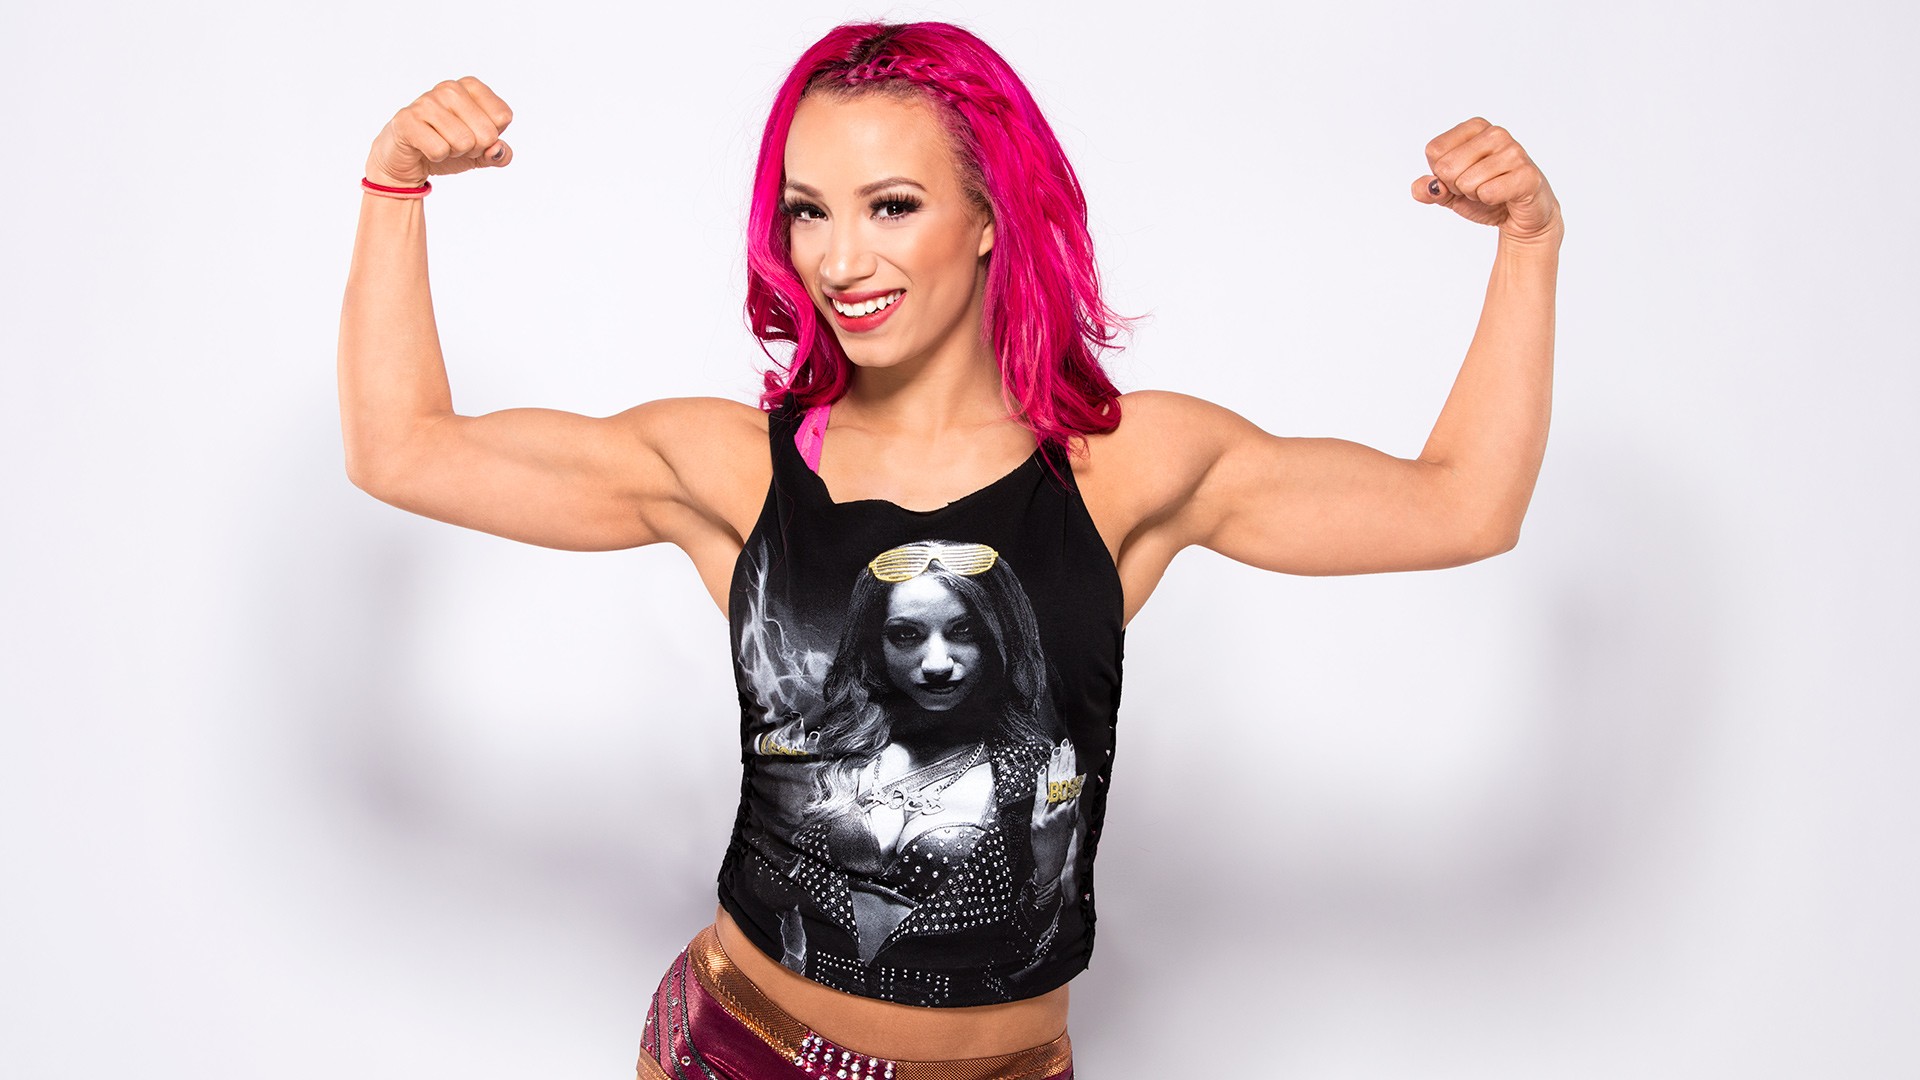 Pink Hair Sasha Banks Wwe Woman Wrestler 1920x1080